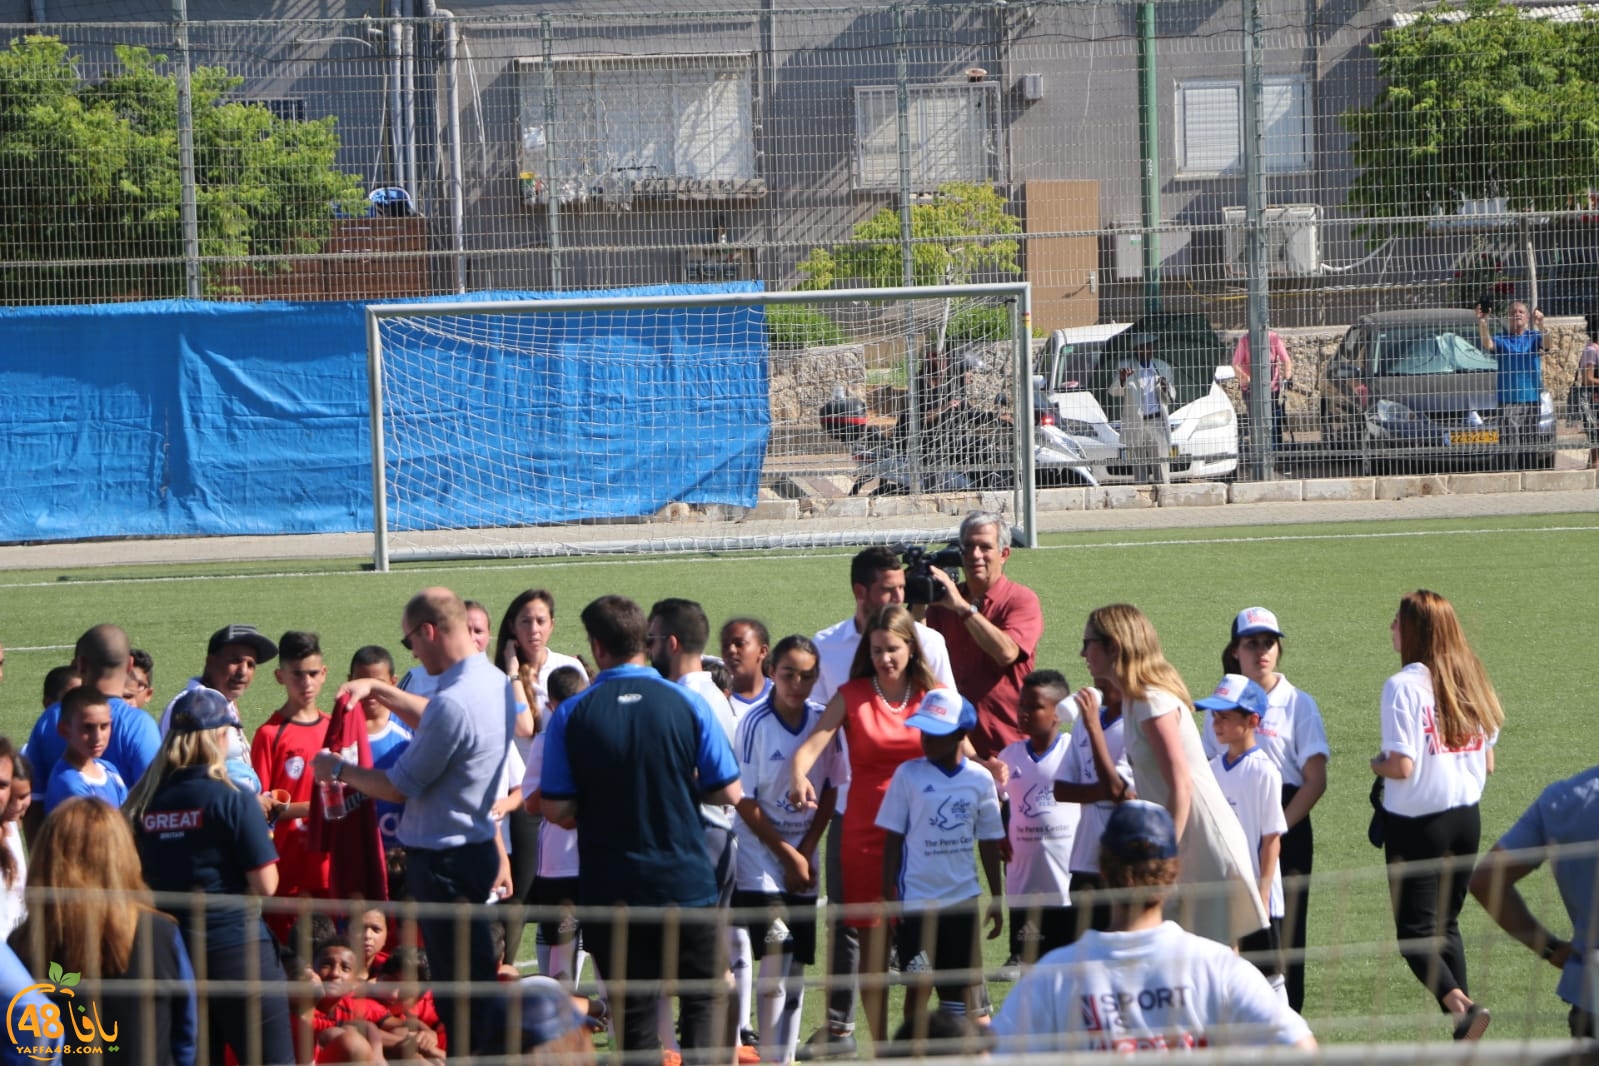  بالصور: الأمير ويليام يزور مدينة يافا ويلعب كرة القدم برفقة الأطفال 